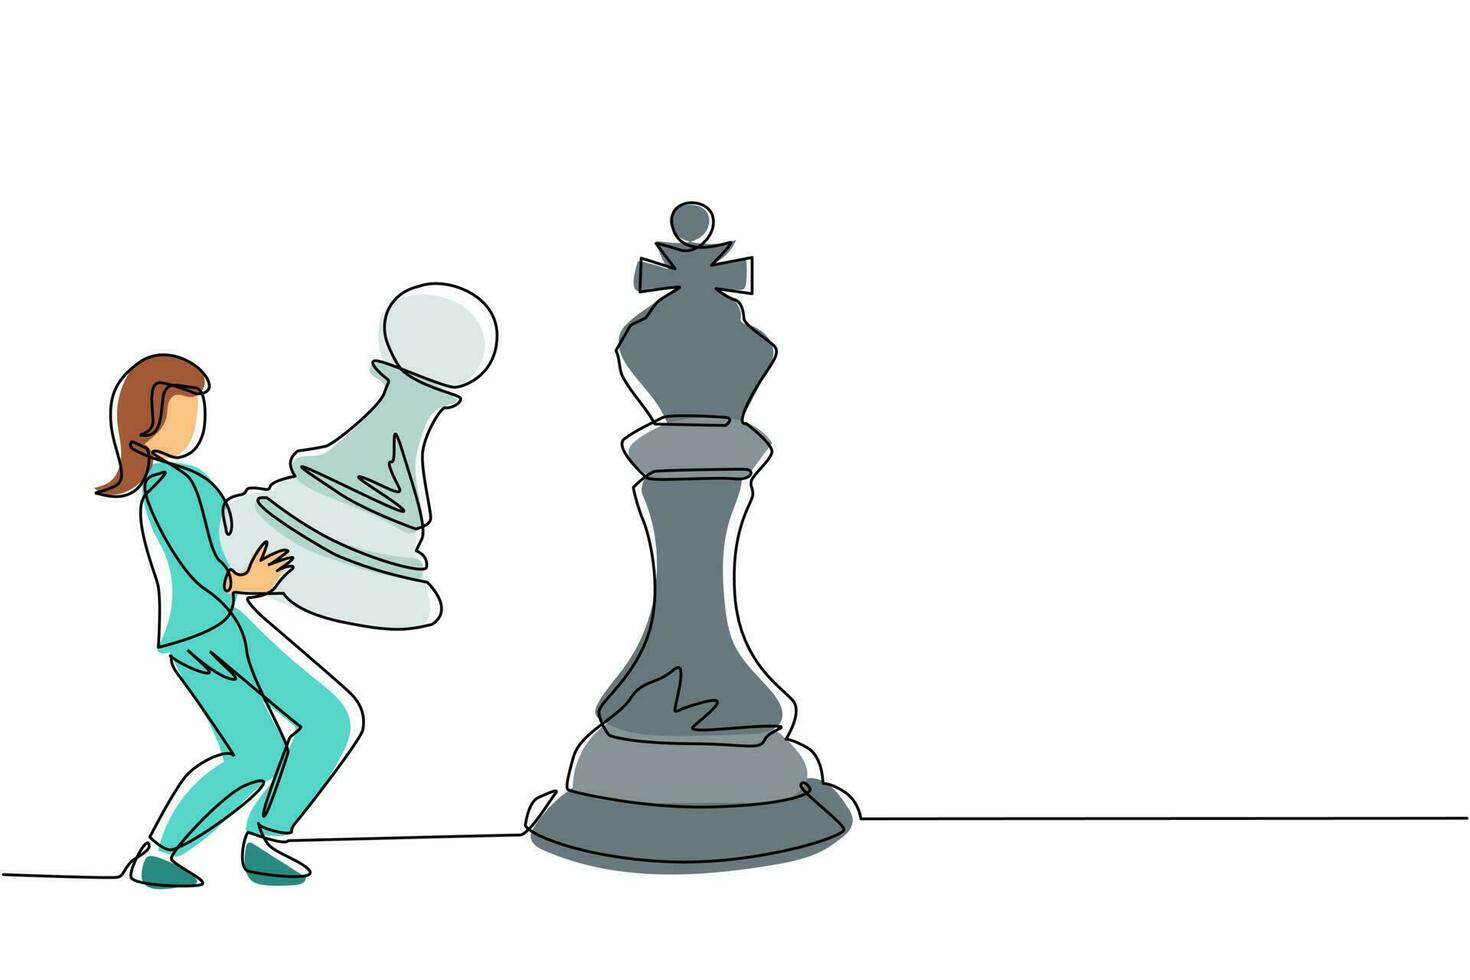 enda kontinuerlig linjeritning affärskvinna håller bonde schackpjäs för att slå kung schack. strategisk planering, affärsutvecklingsstrategi, taktik inom entreprenörskap. en linje rita design vektor